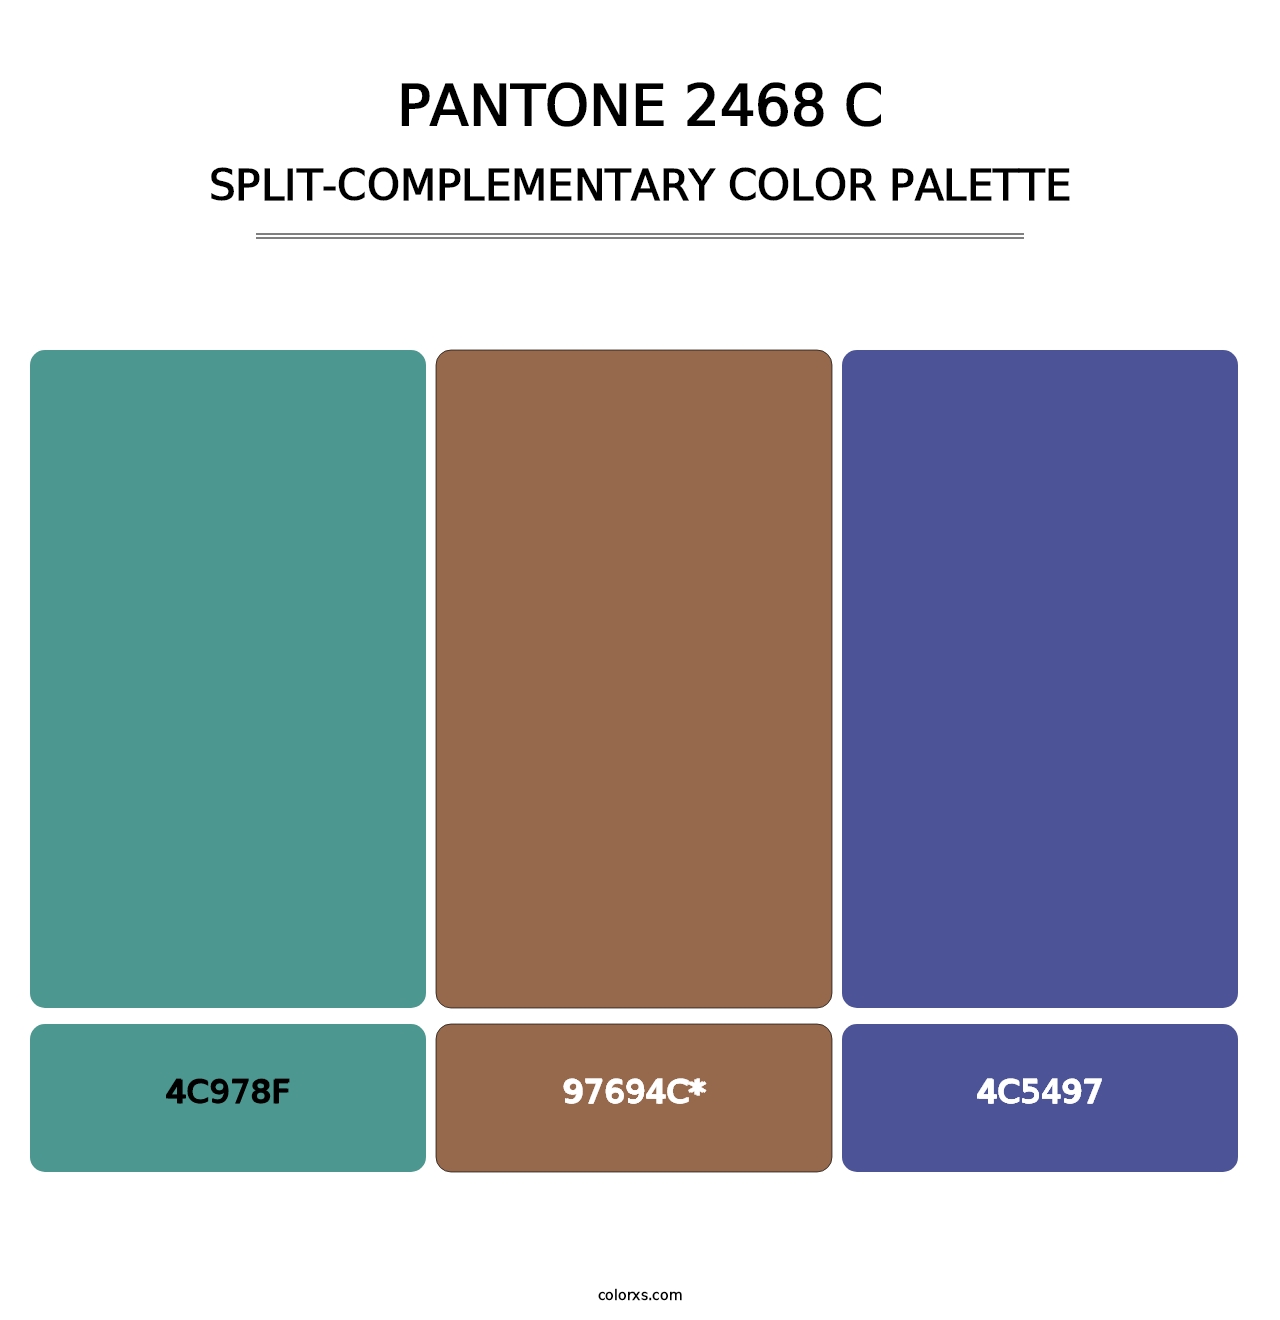 PANTONE 2468 C - Split-Complementary Color Palette